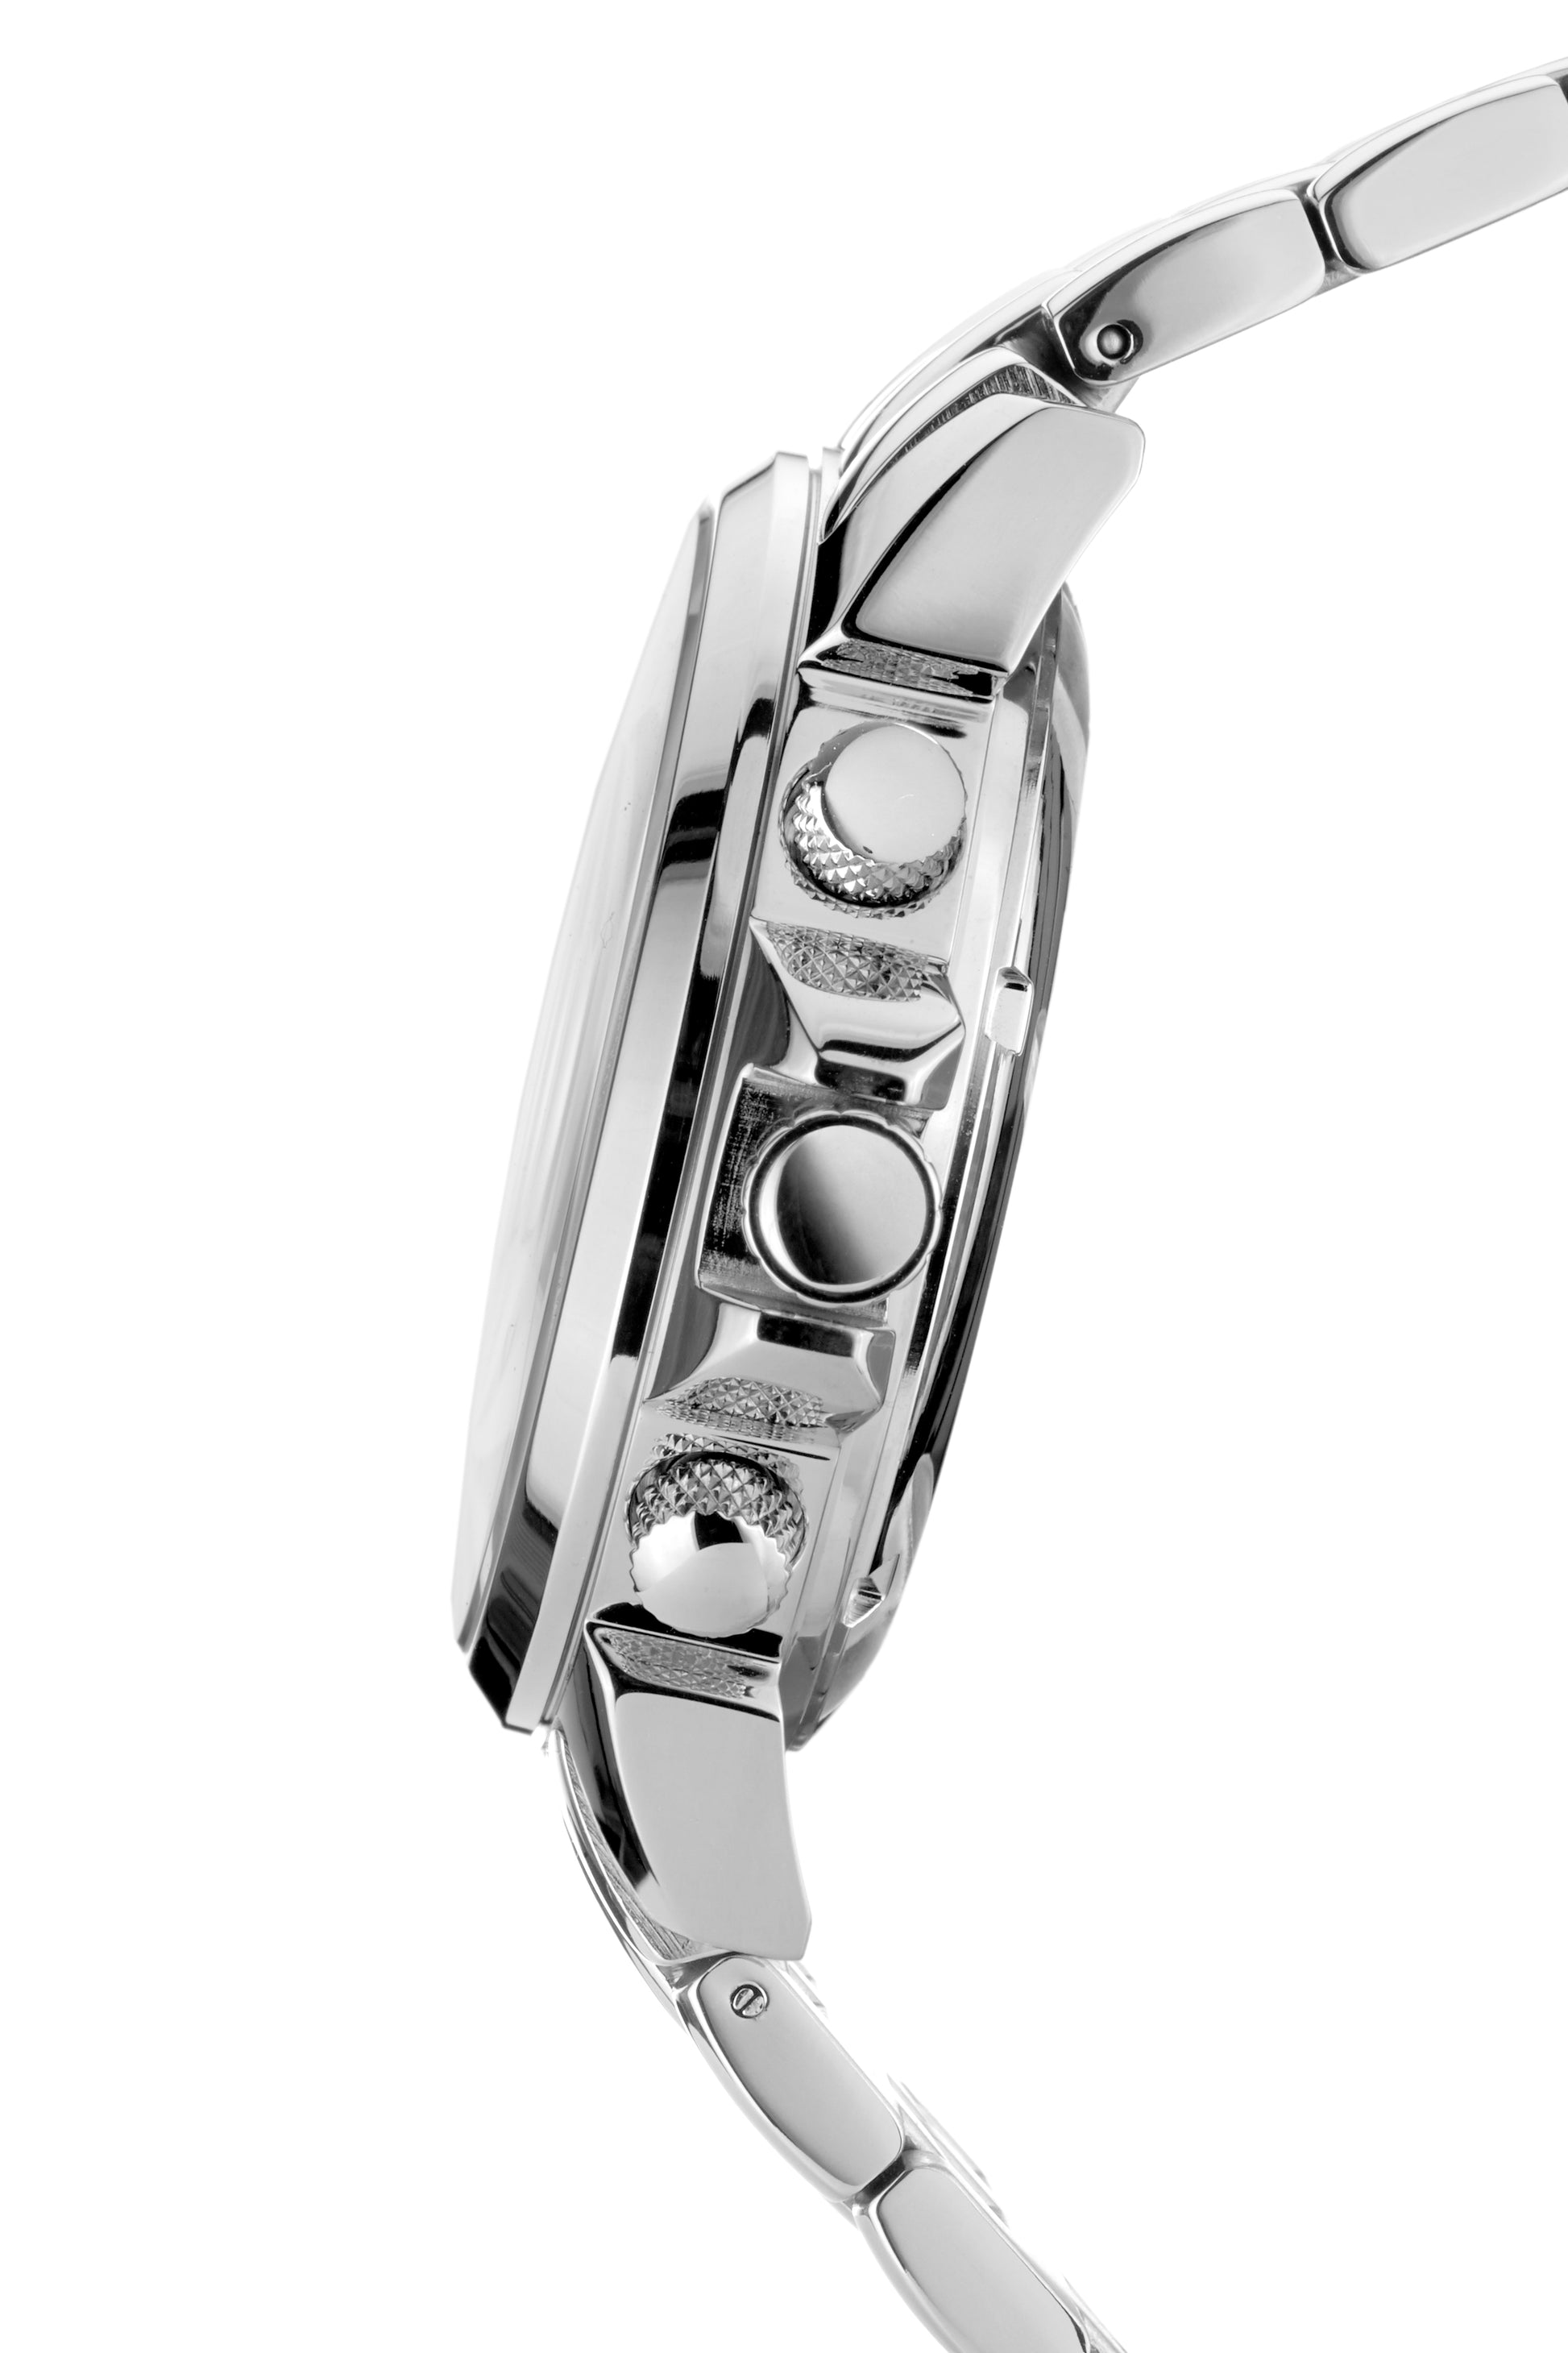 Automatic watches — Étoile Polaire — André Belfort — silver